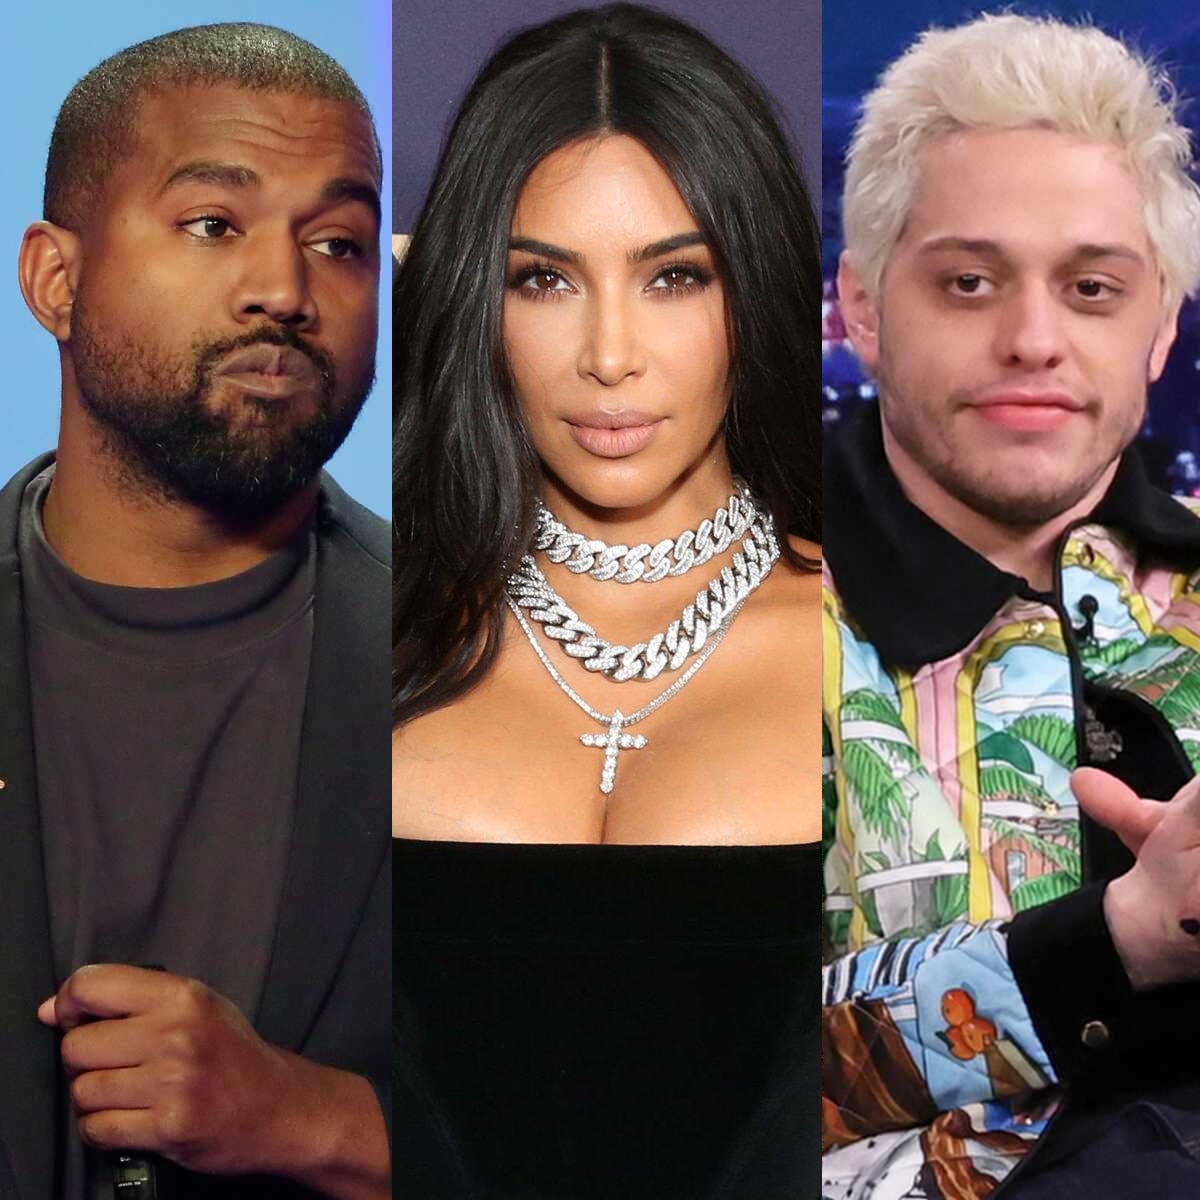 Ye, Kanye West, Kim Kardashian, Pete Davidson